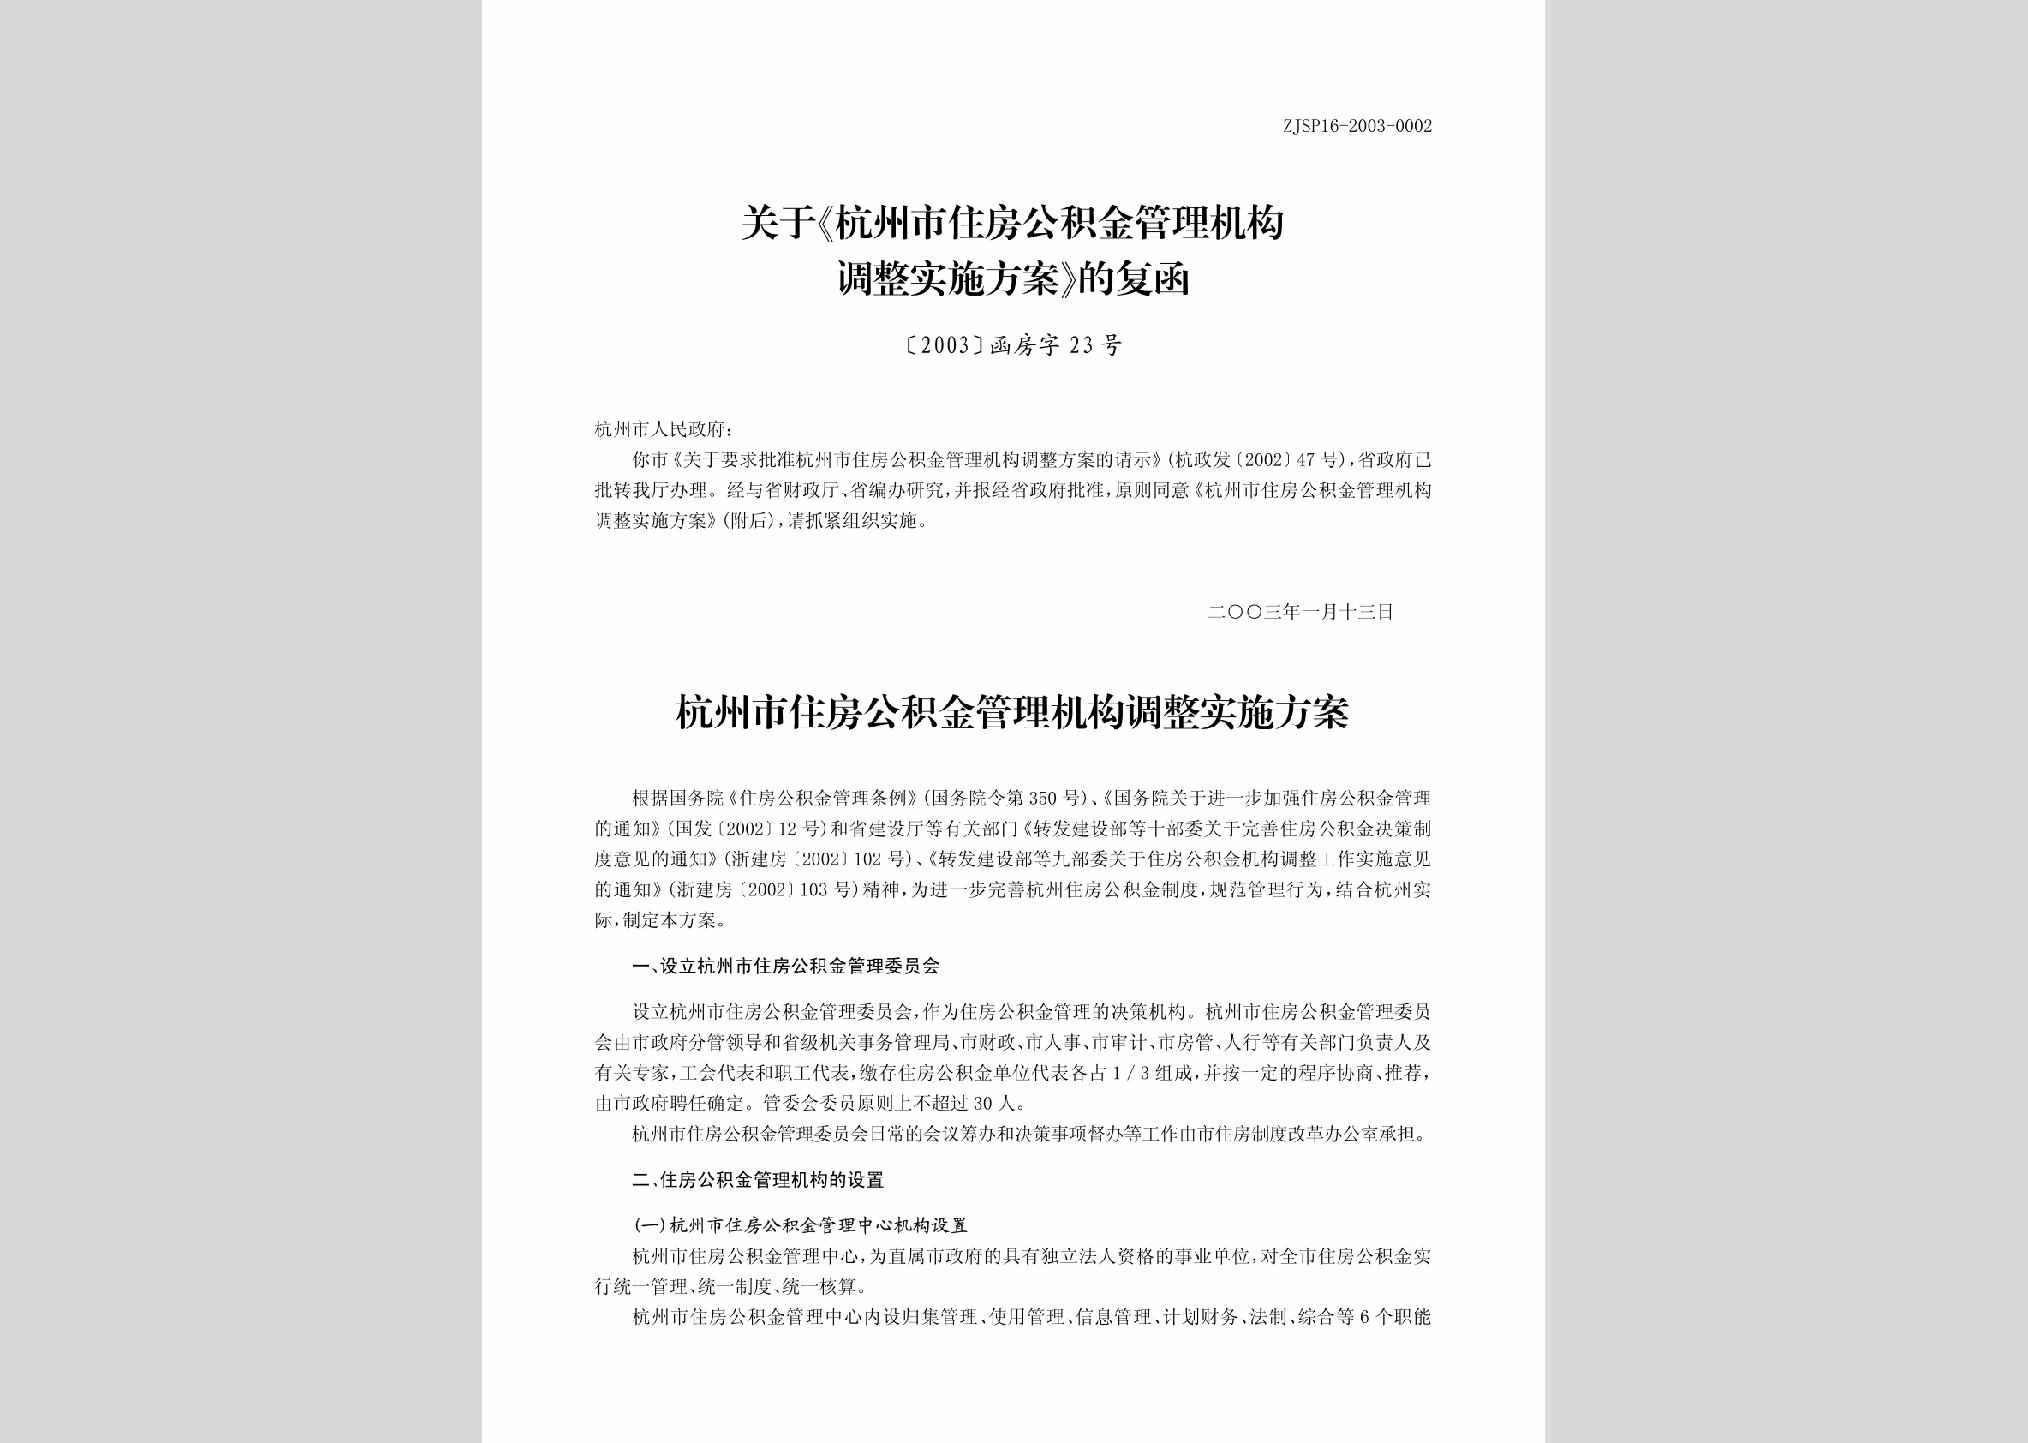 [2003]函房字23号：关于《杭州市住房公积金管理机构调整实施方案》的通知